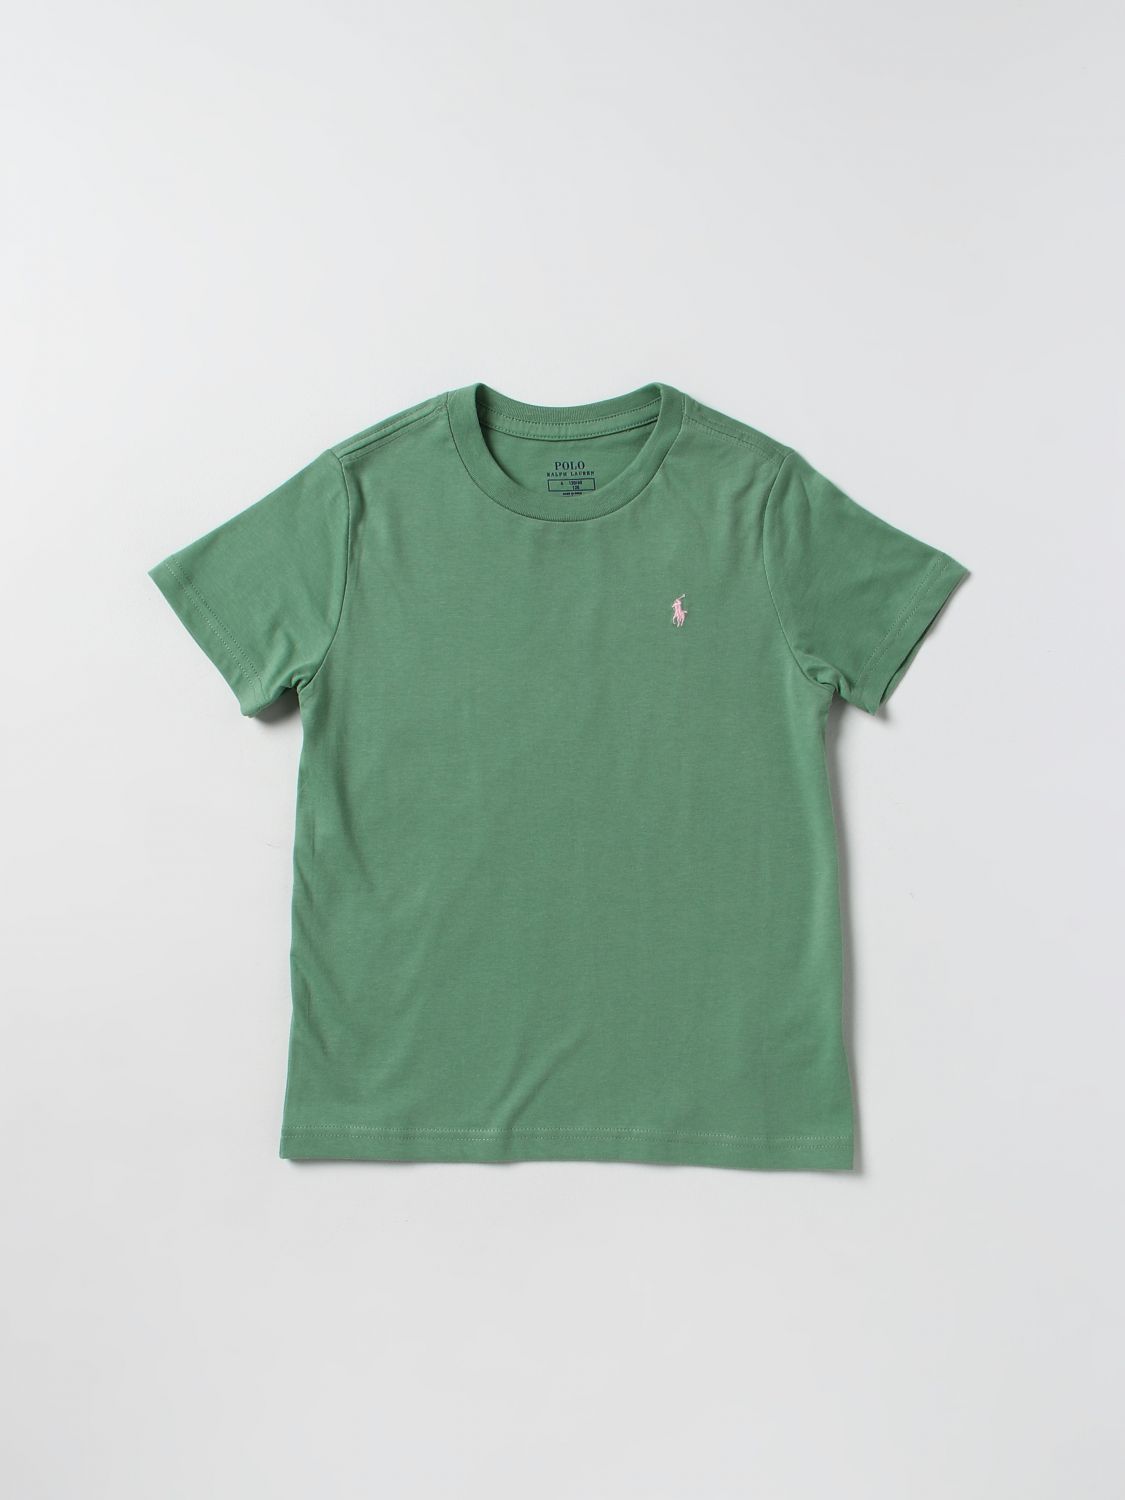 Polo Ralph Lauren Kids' Cotton T-shirt In Grass Green